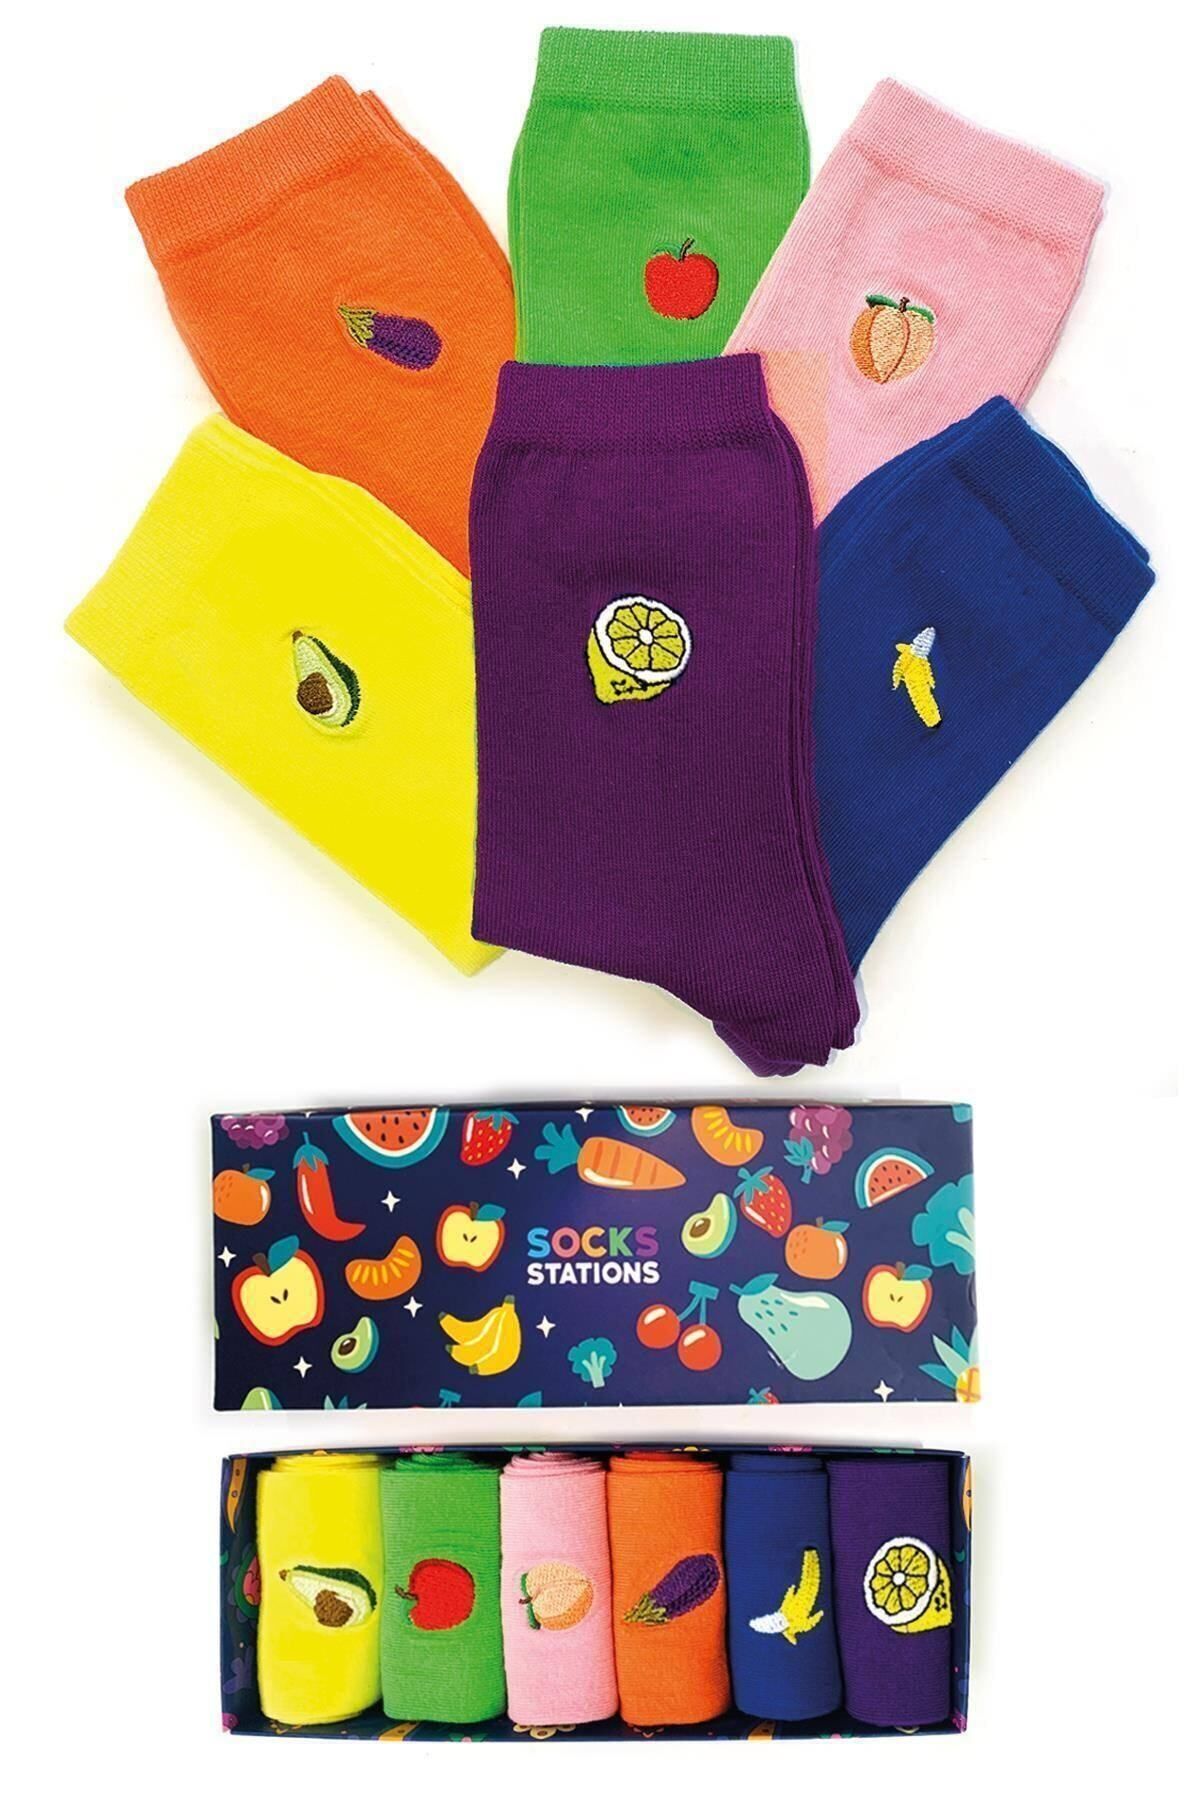 Socks Stations Unisex Renkli Nakışlı Meyve Desenli Çorap Kutusu